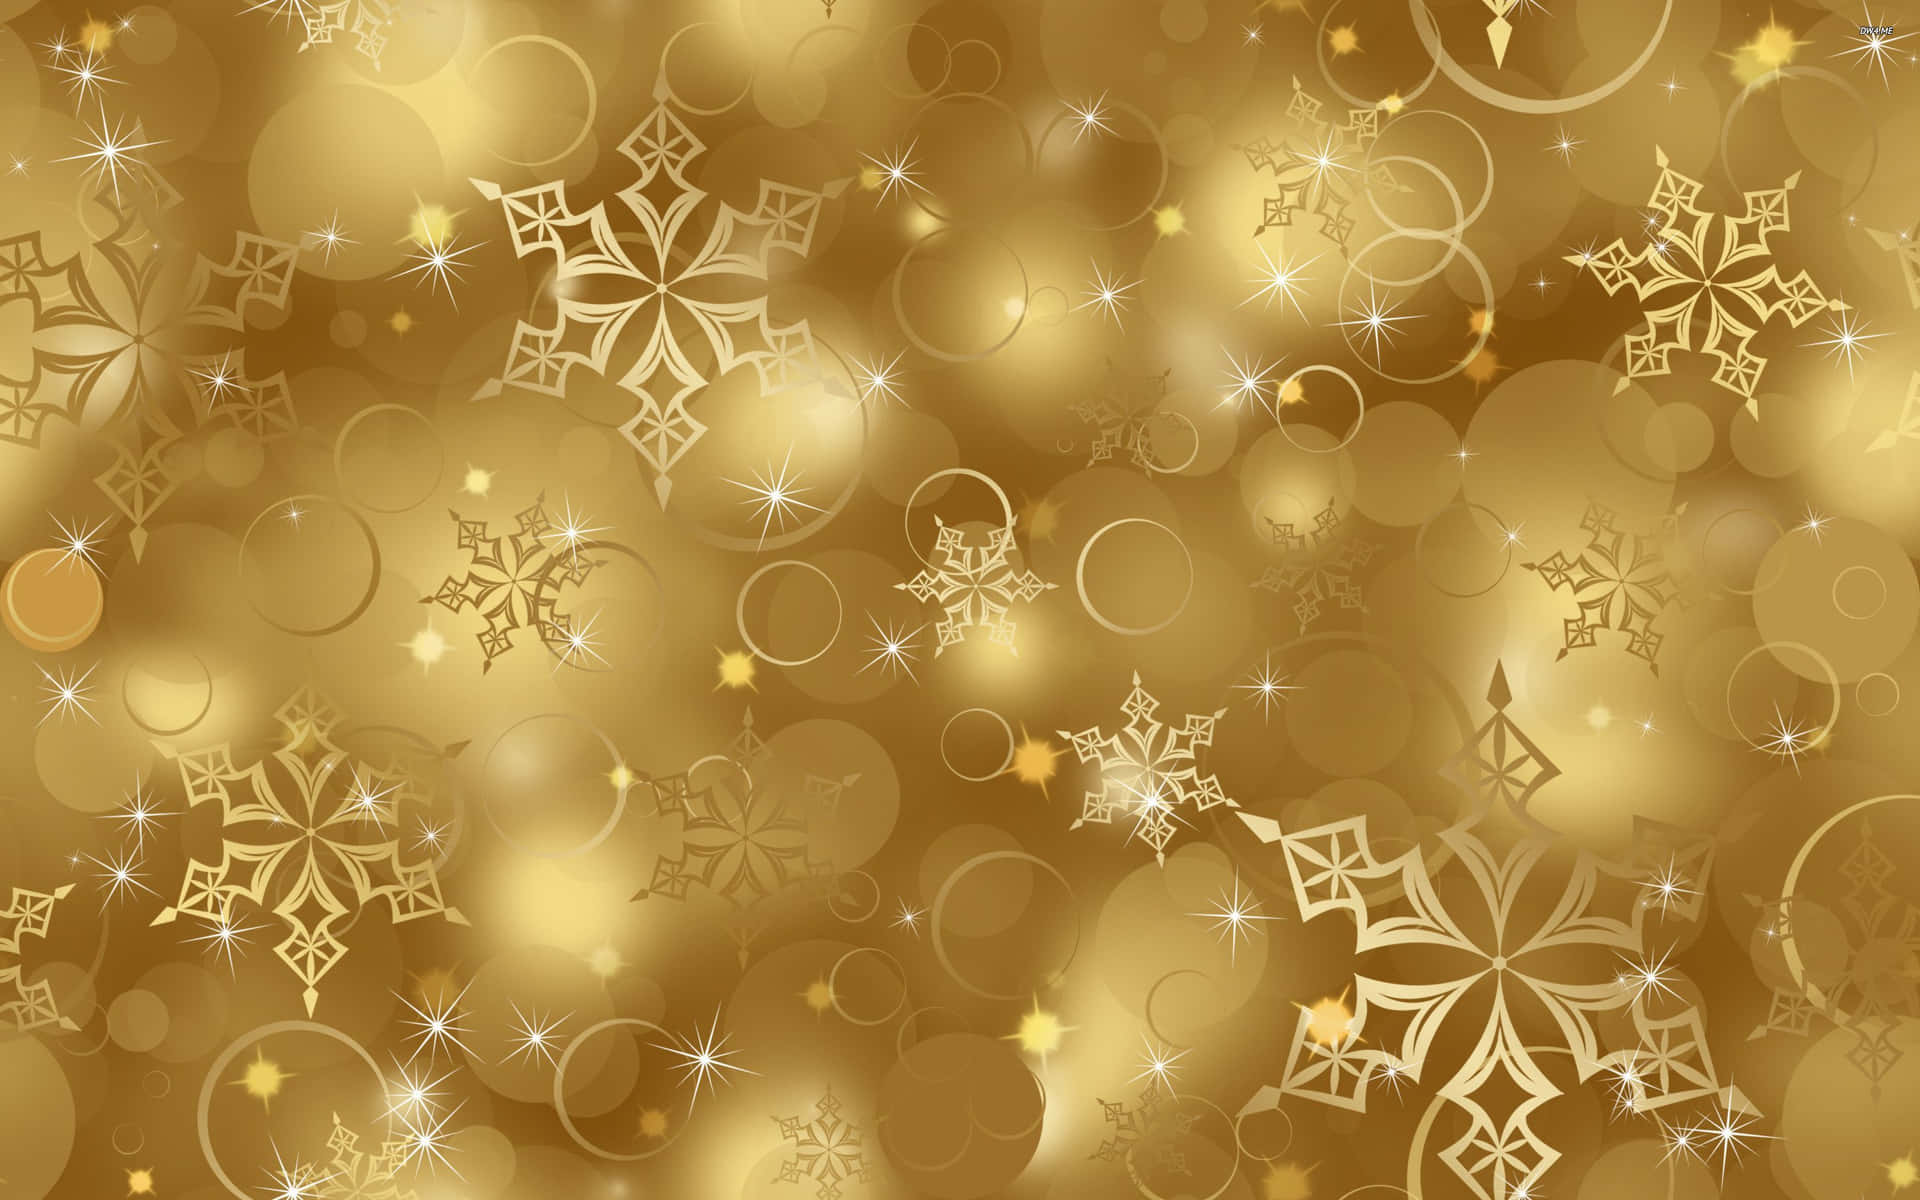 Celebreo Natal Alegremente Com Decorações Temáticas De Ouro Para Computador Ou Celular. Papel de Parede